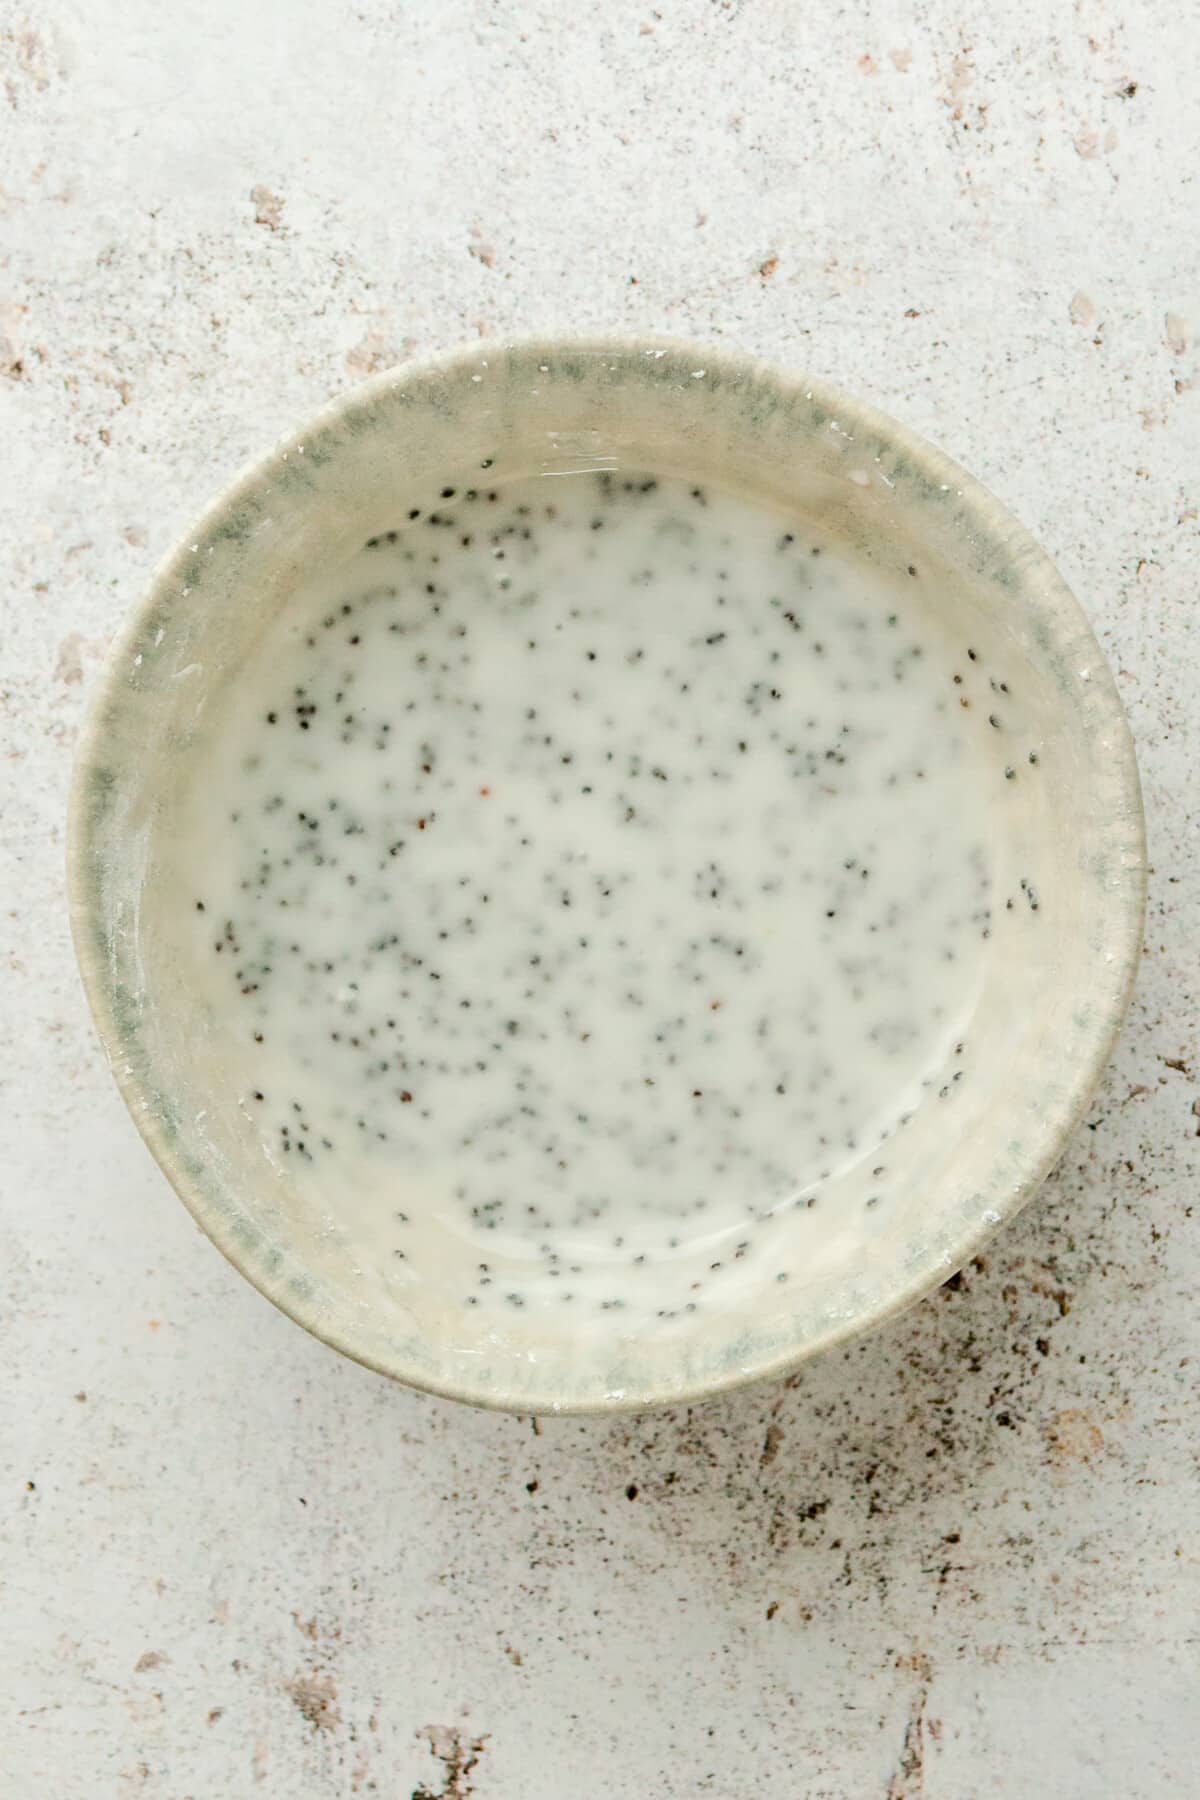 A lemon poppy seed glaze sits in a ceramic bowl on a light grey surface.